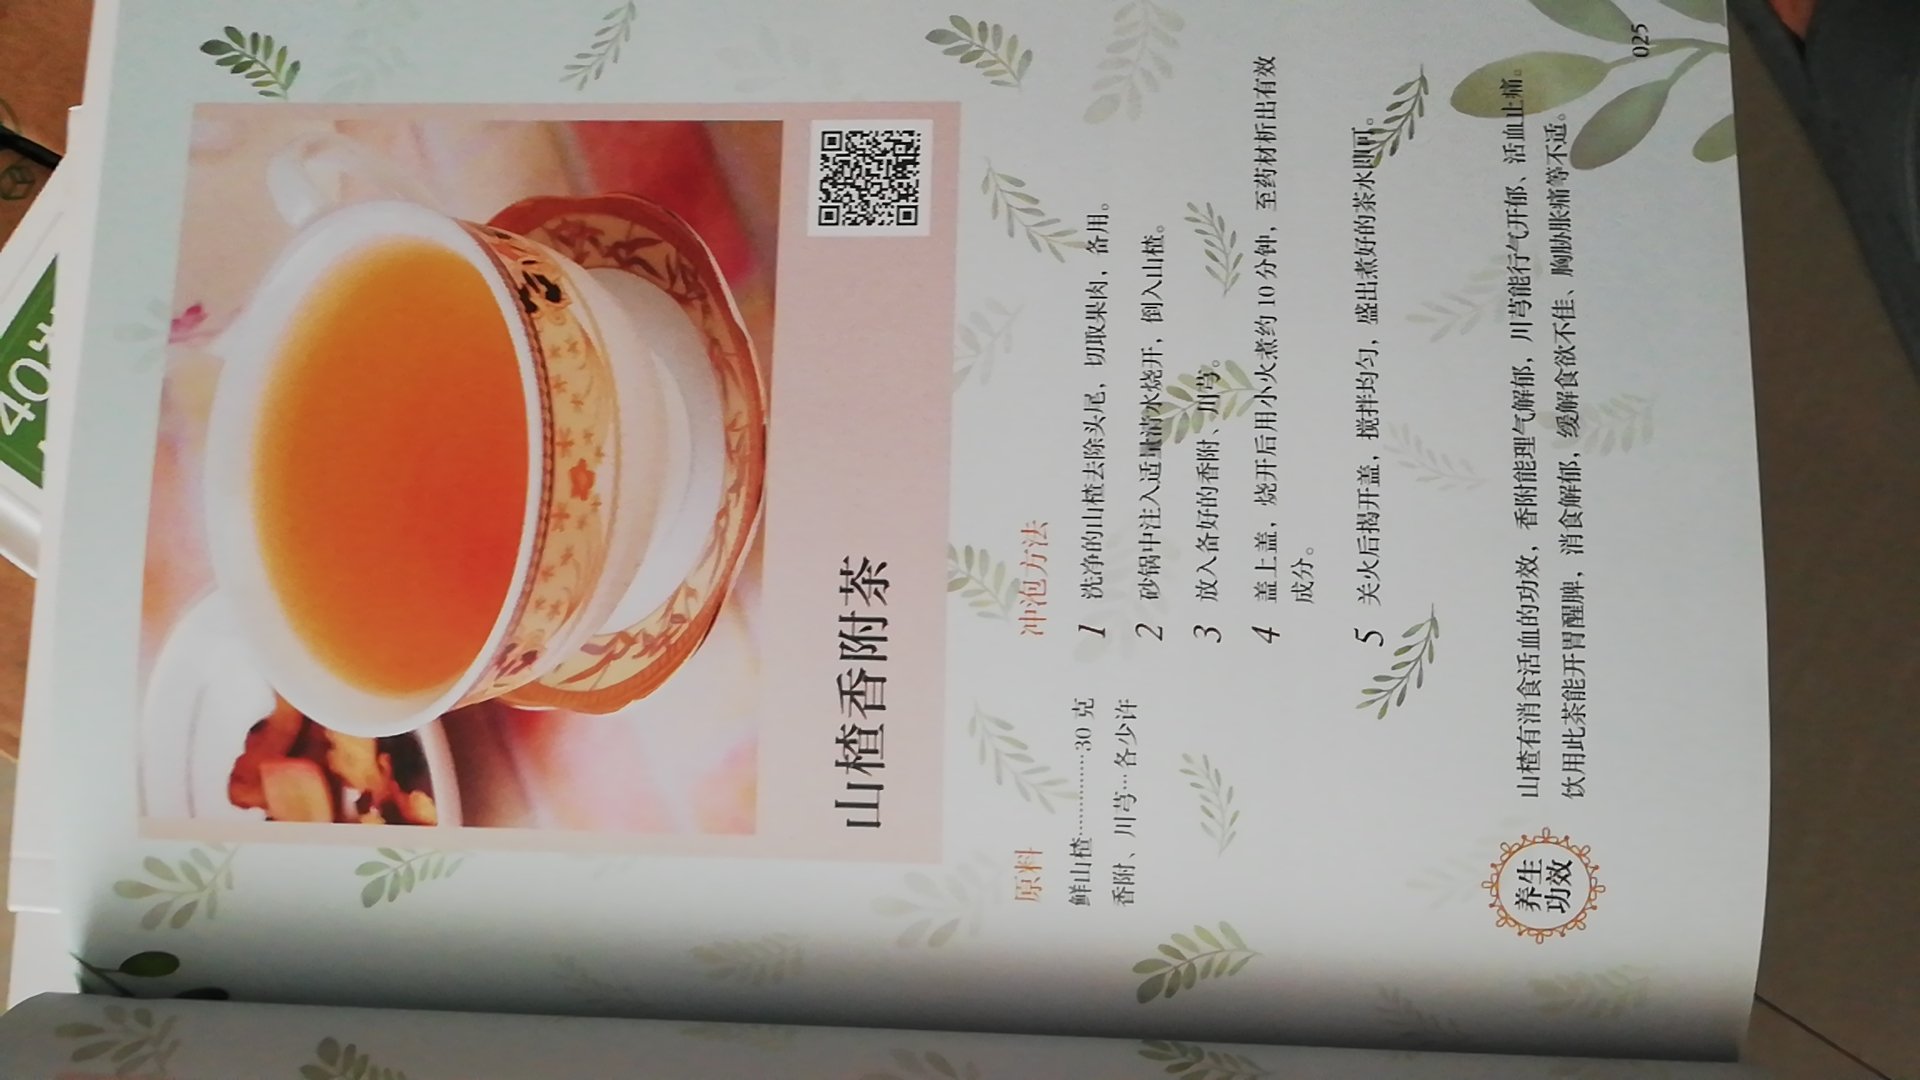 图书印刷清晰，彩色配图。本书根据不同节气提供108道药茶，讲解了茶的原料，冲泡方法和功效，希望对身体有效。